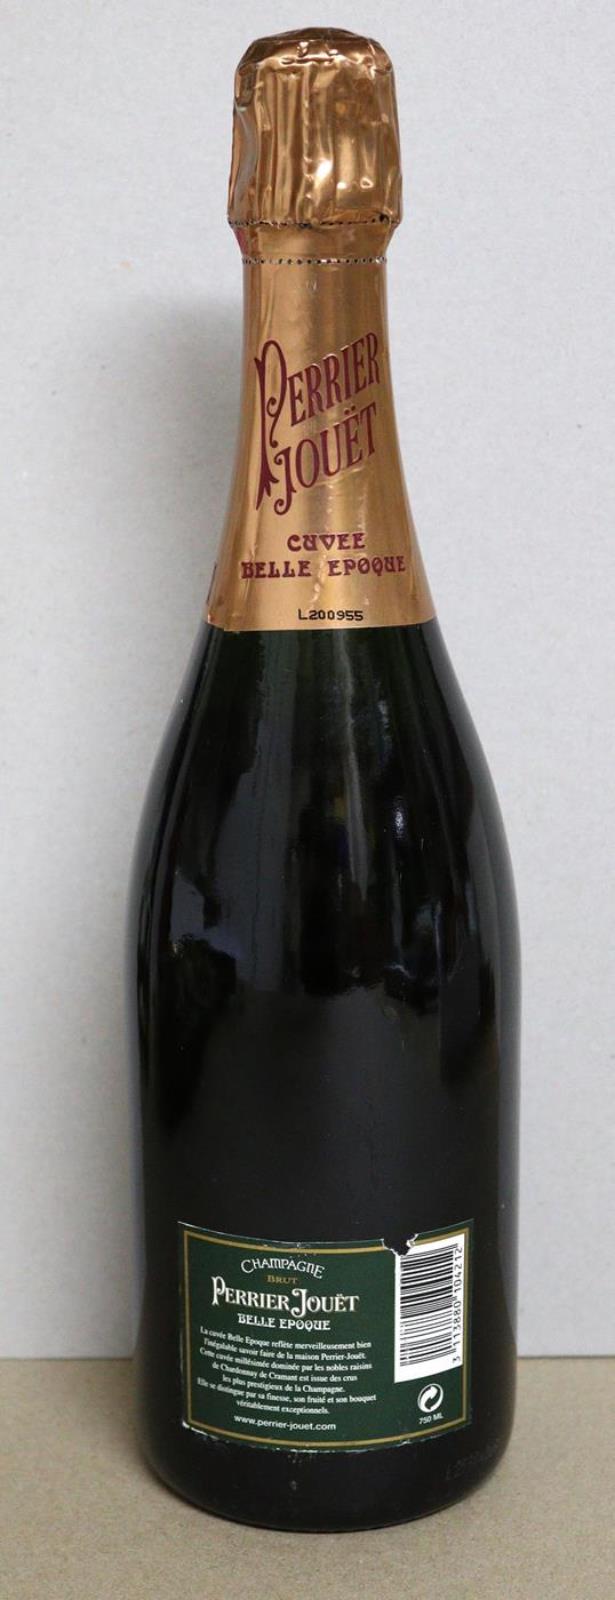 Champagner Brut Perrier Jouët Belle Epoque. - Image 2 of 2